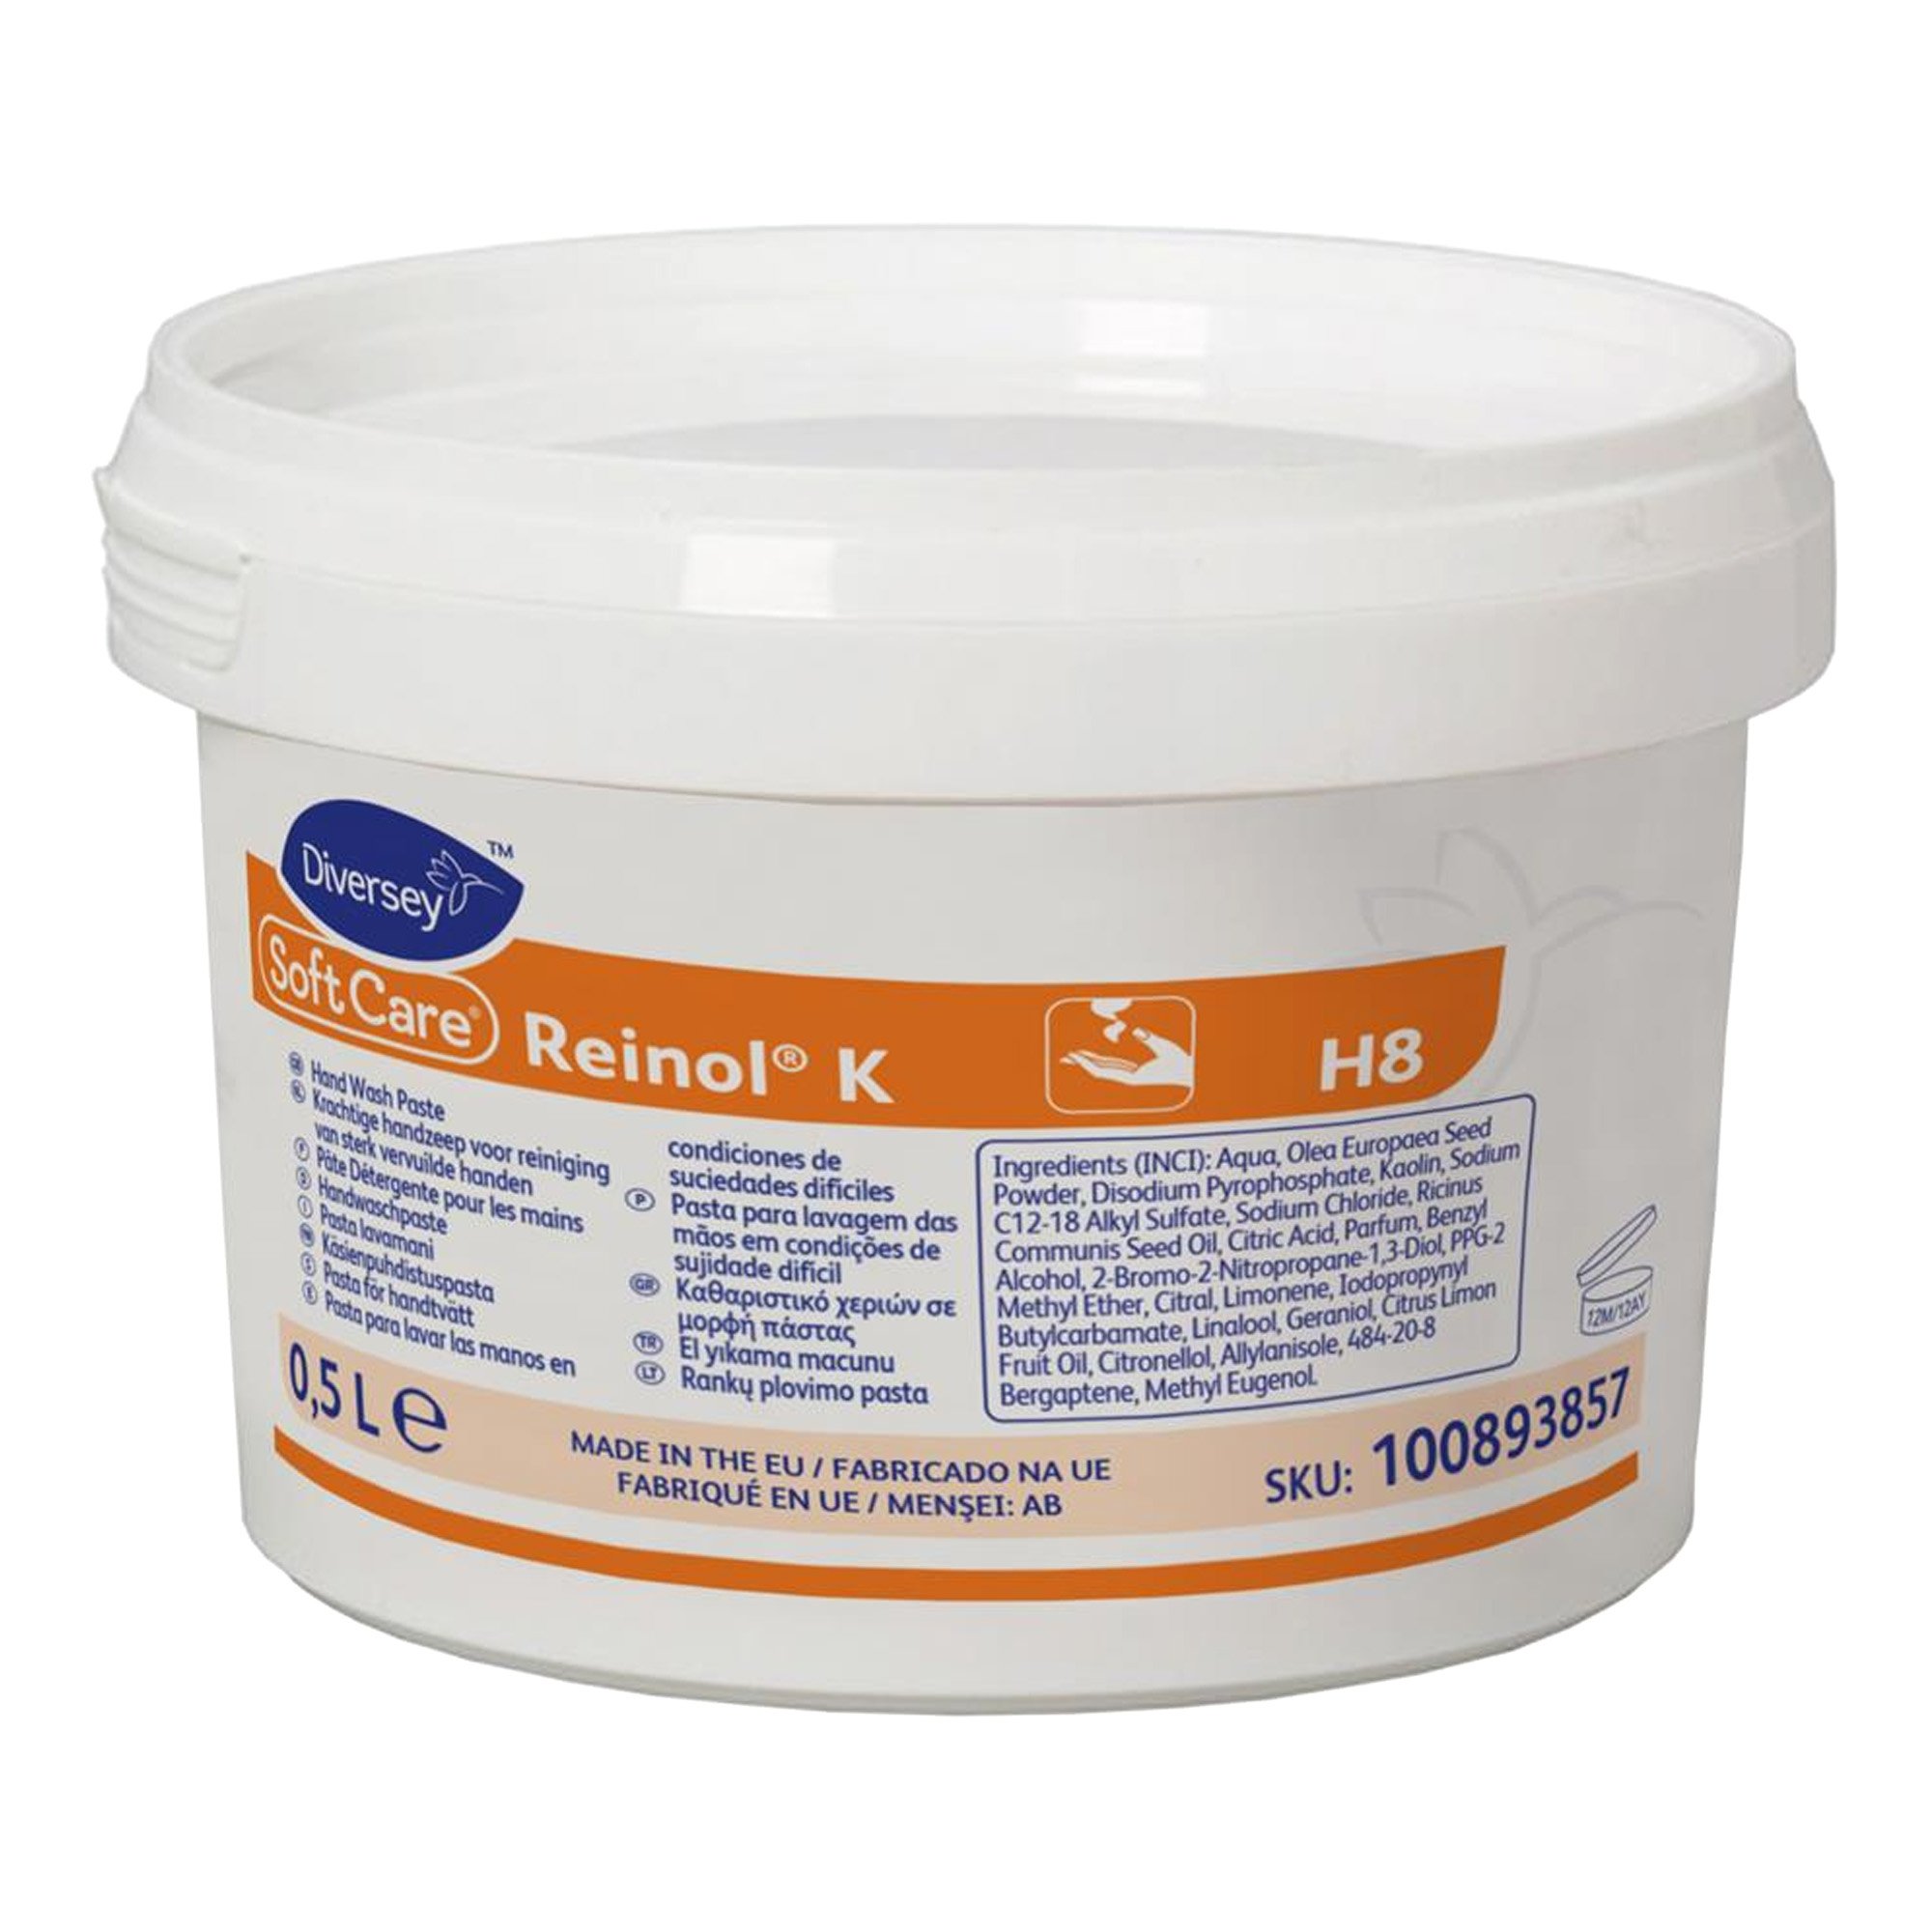 Soft Care Reinol K Handwaschpaste 500 ml Dose 100893857-1_1